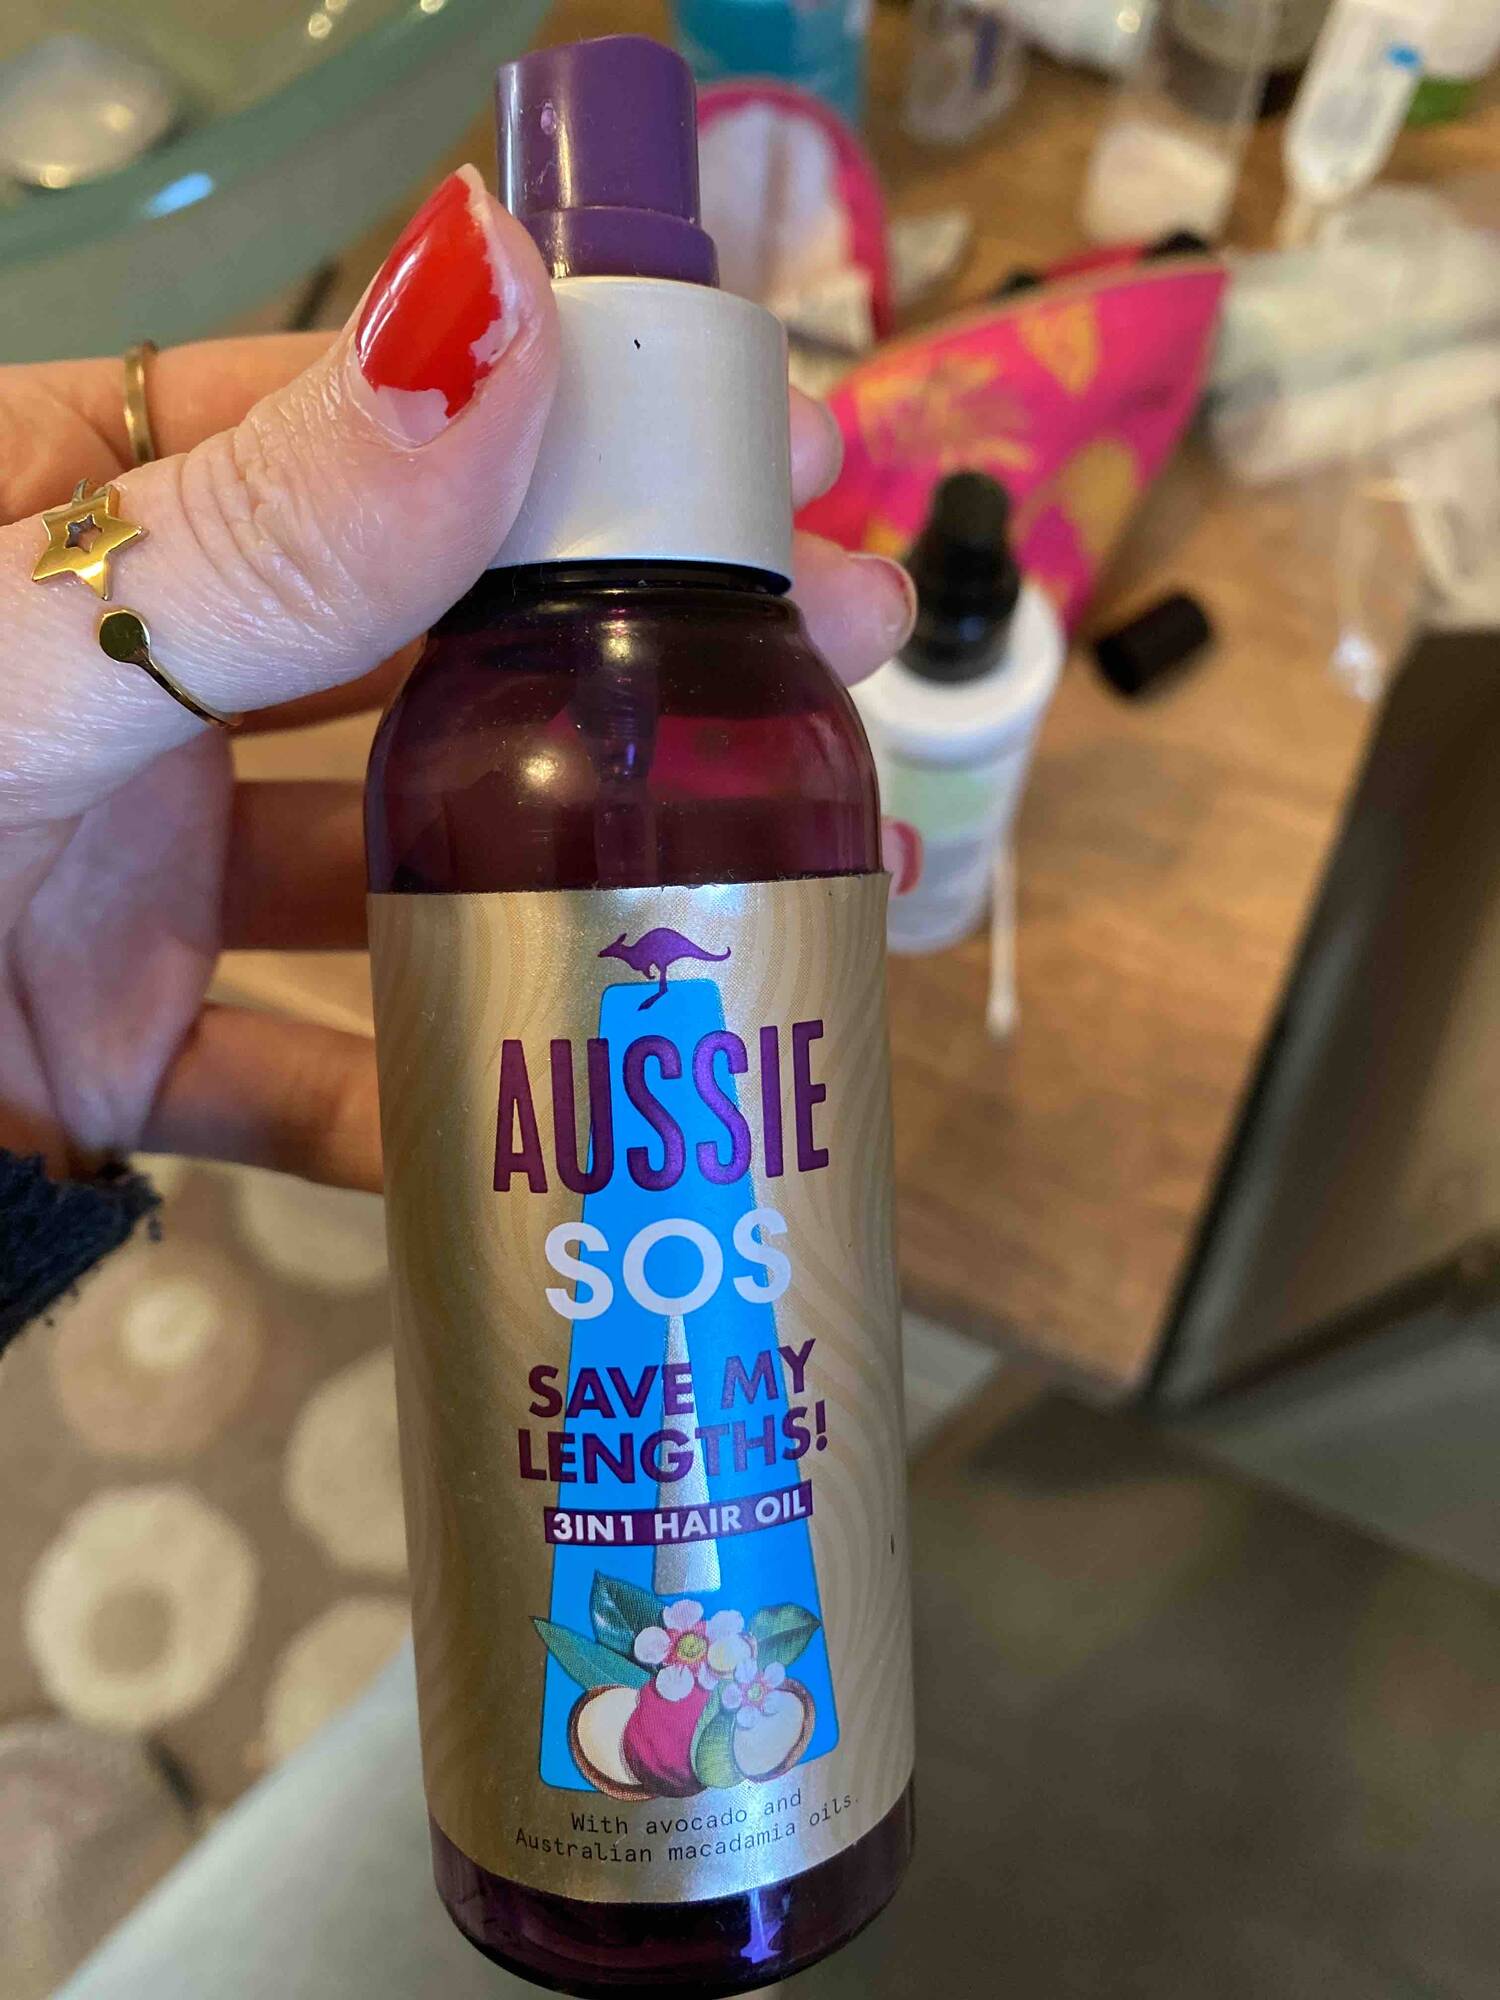 AUSSIE - SOS save my lengths - 3 in 1 Hair oil